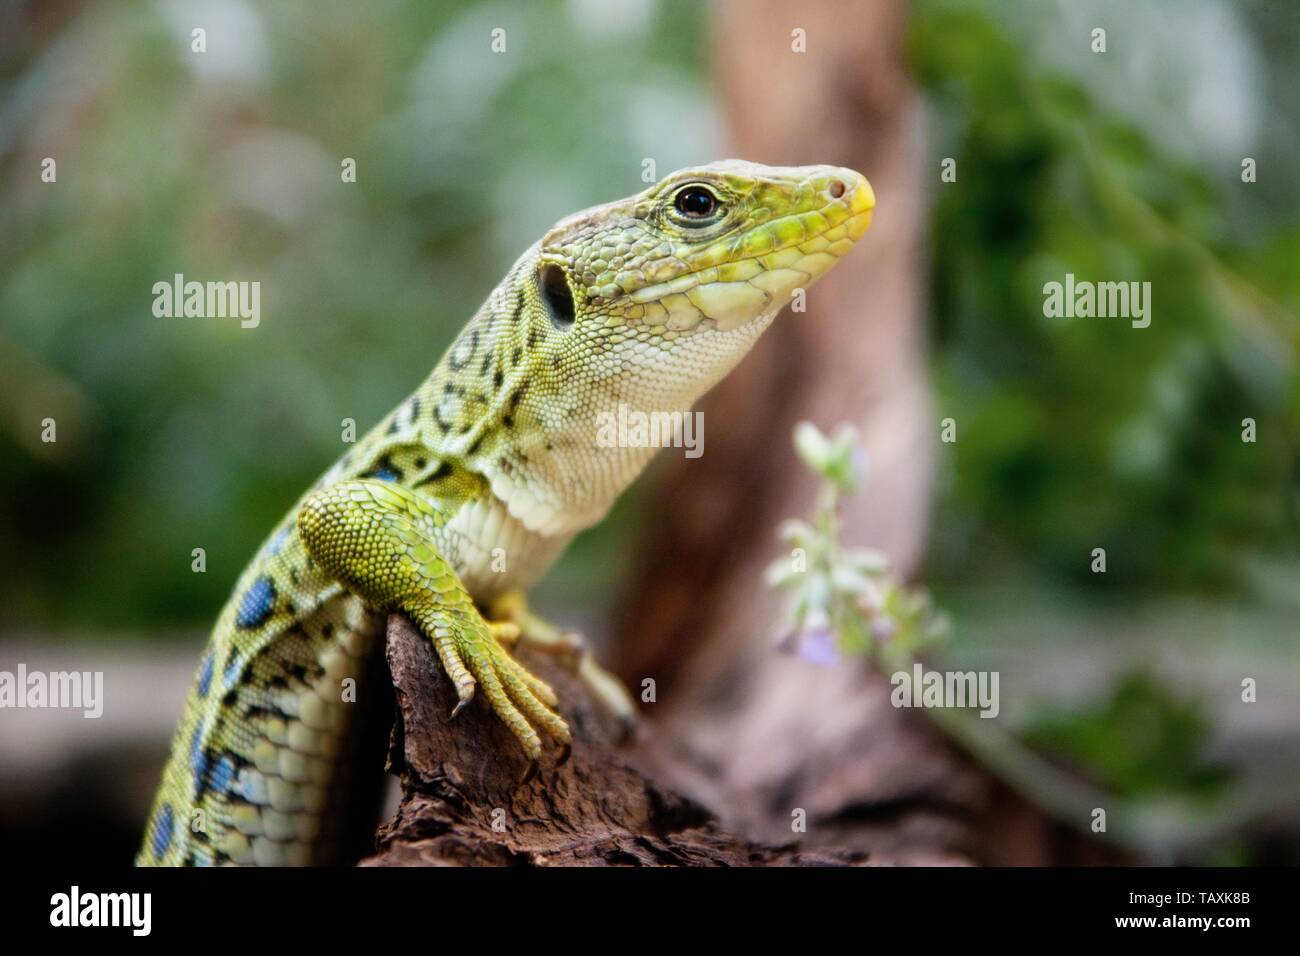 Ocellated lizard Foto de stock